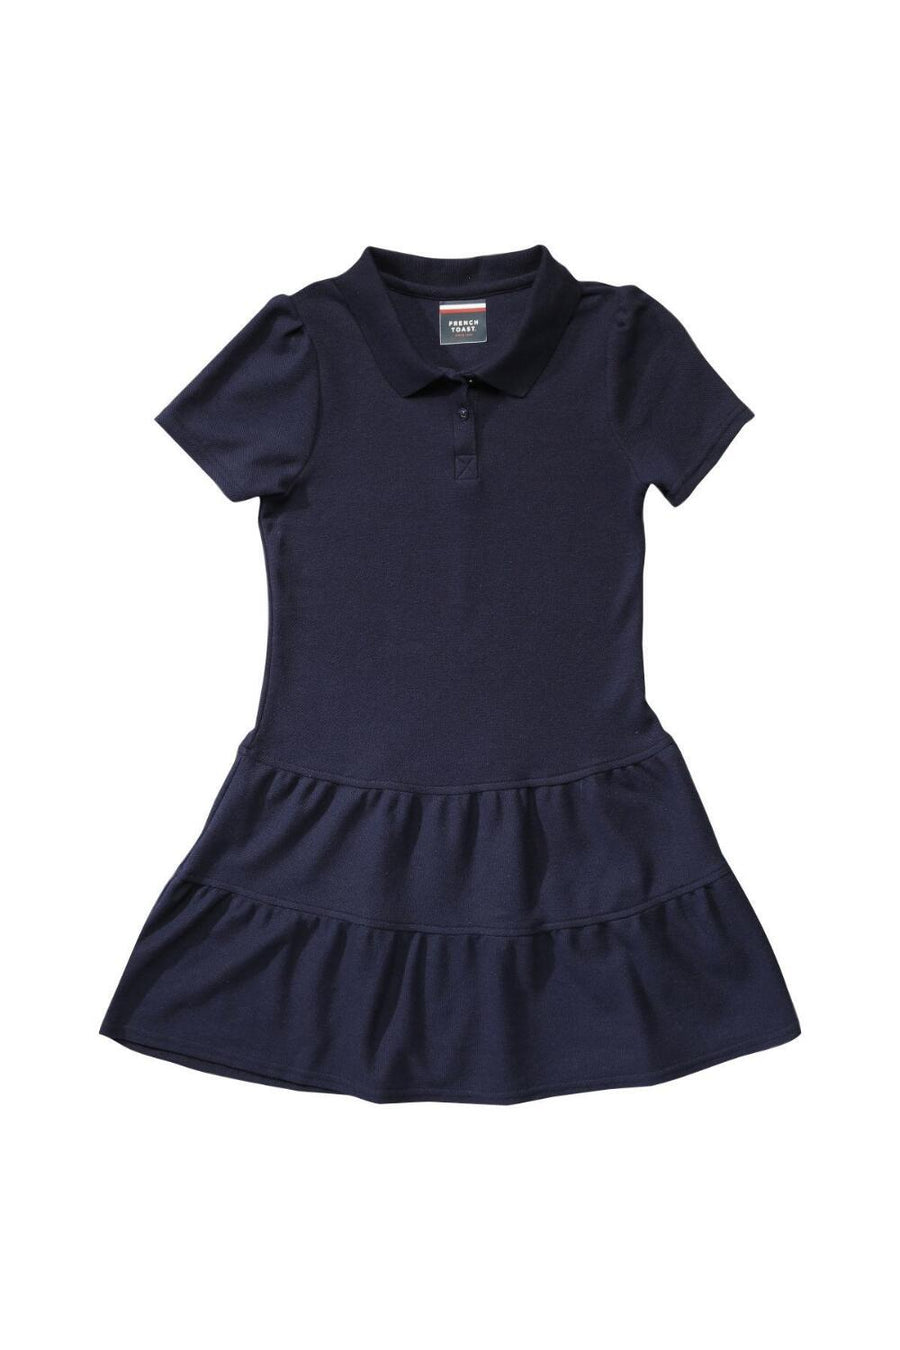 Summer Dress - Youngland Schoolwear